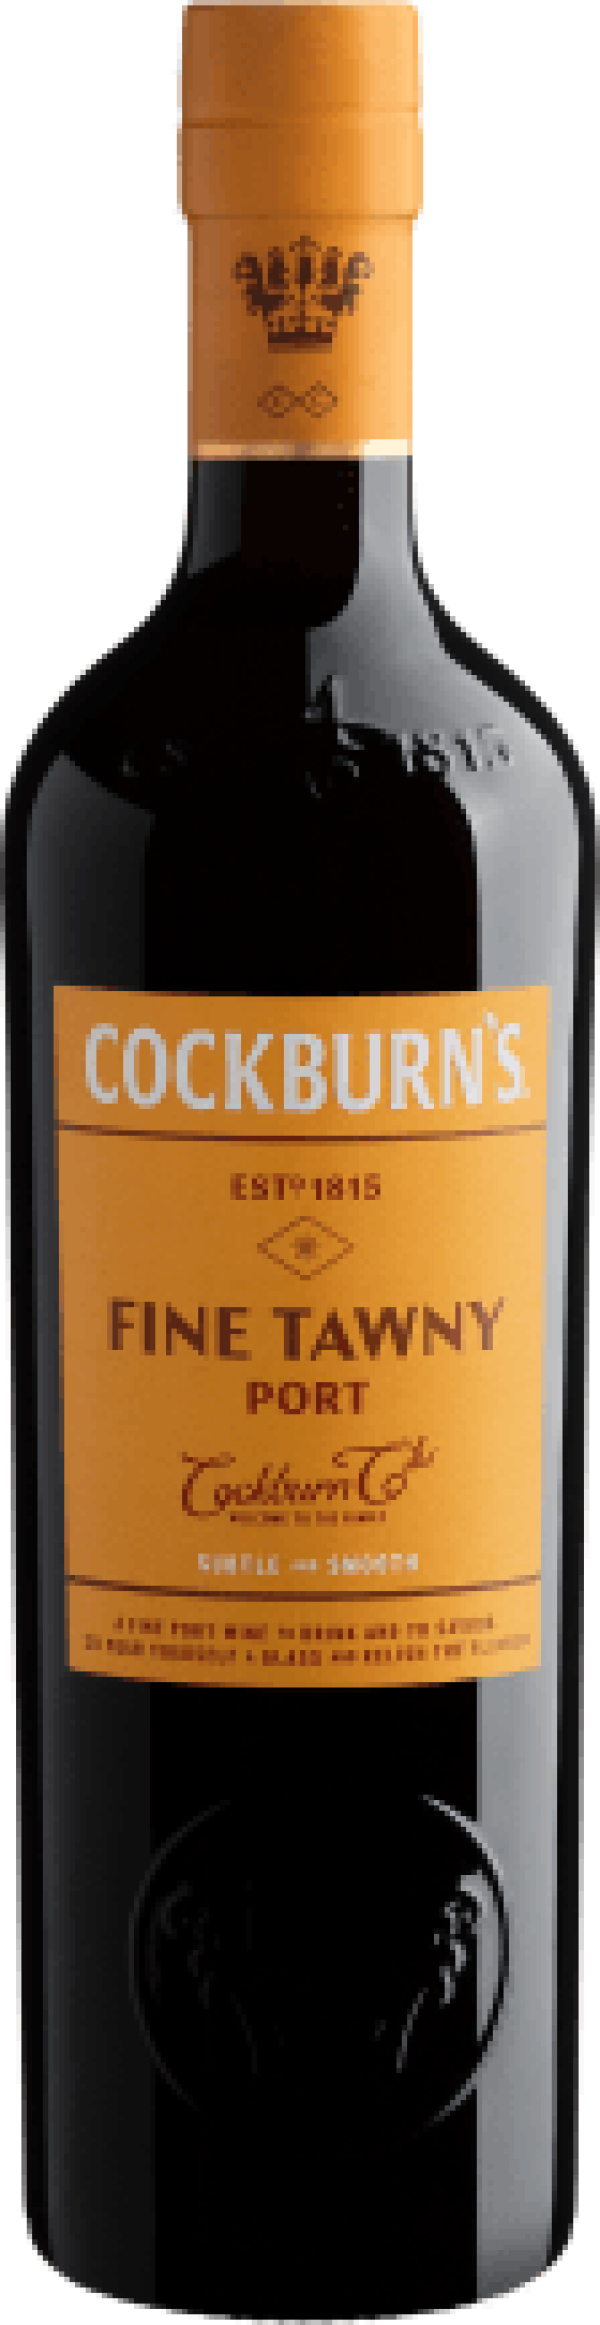 Cockburn's Fine Tawny Port